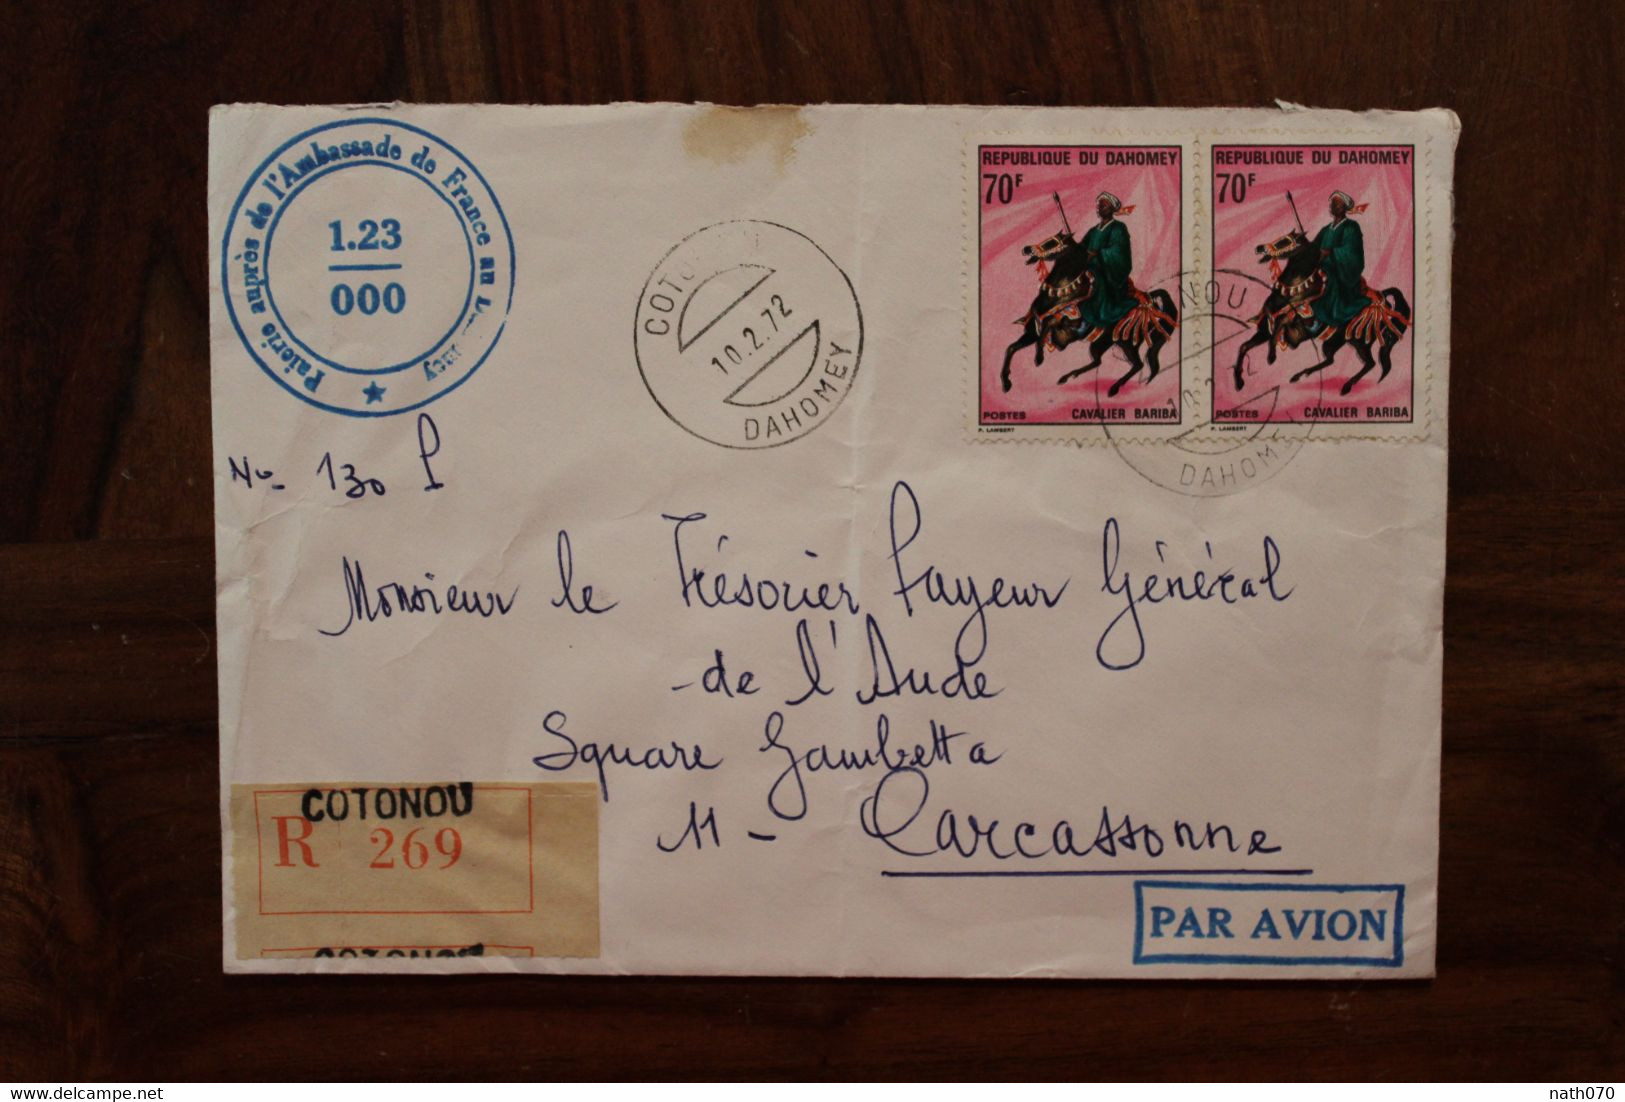 1972 Dahomey Bénin Ambassade De France Pour Carcassonne Enveloppe Cover Recommandé Registered Reco - Benin – Dahomey (1960-...)